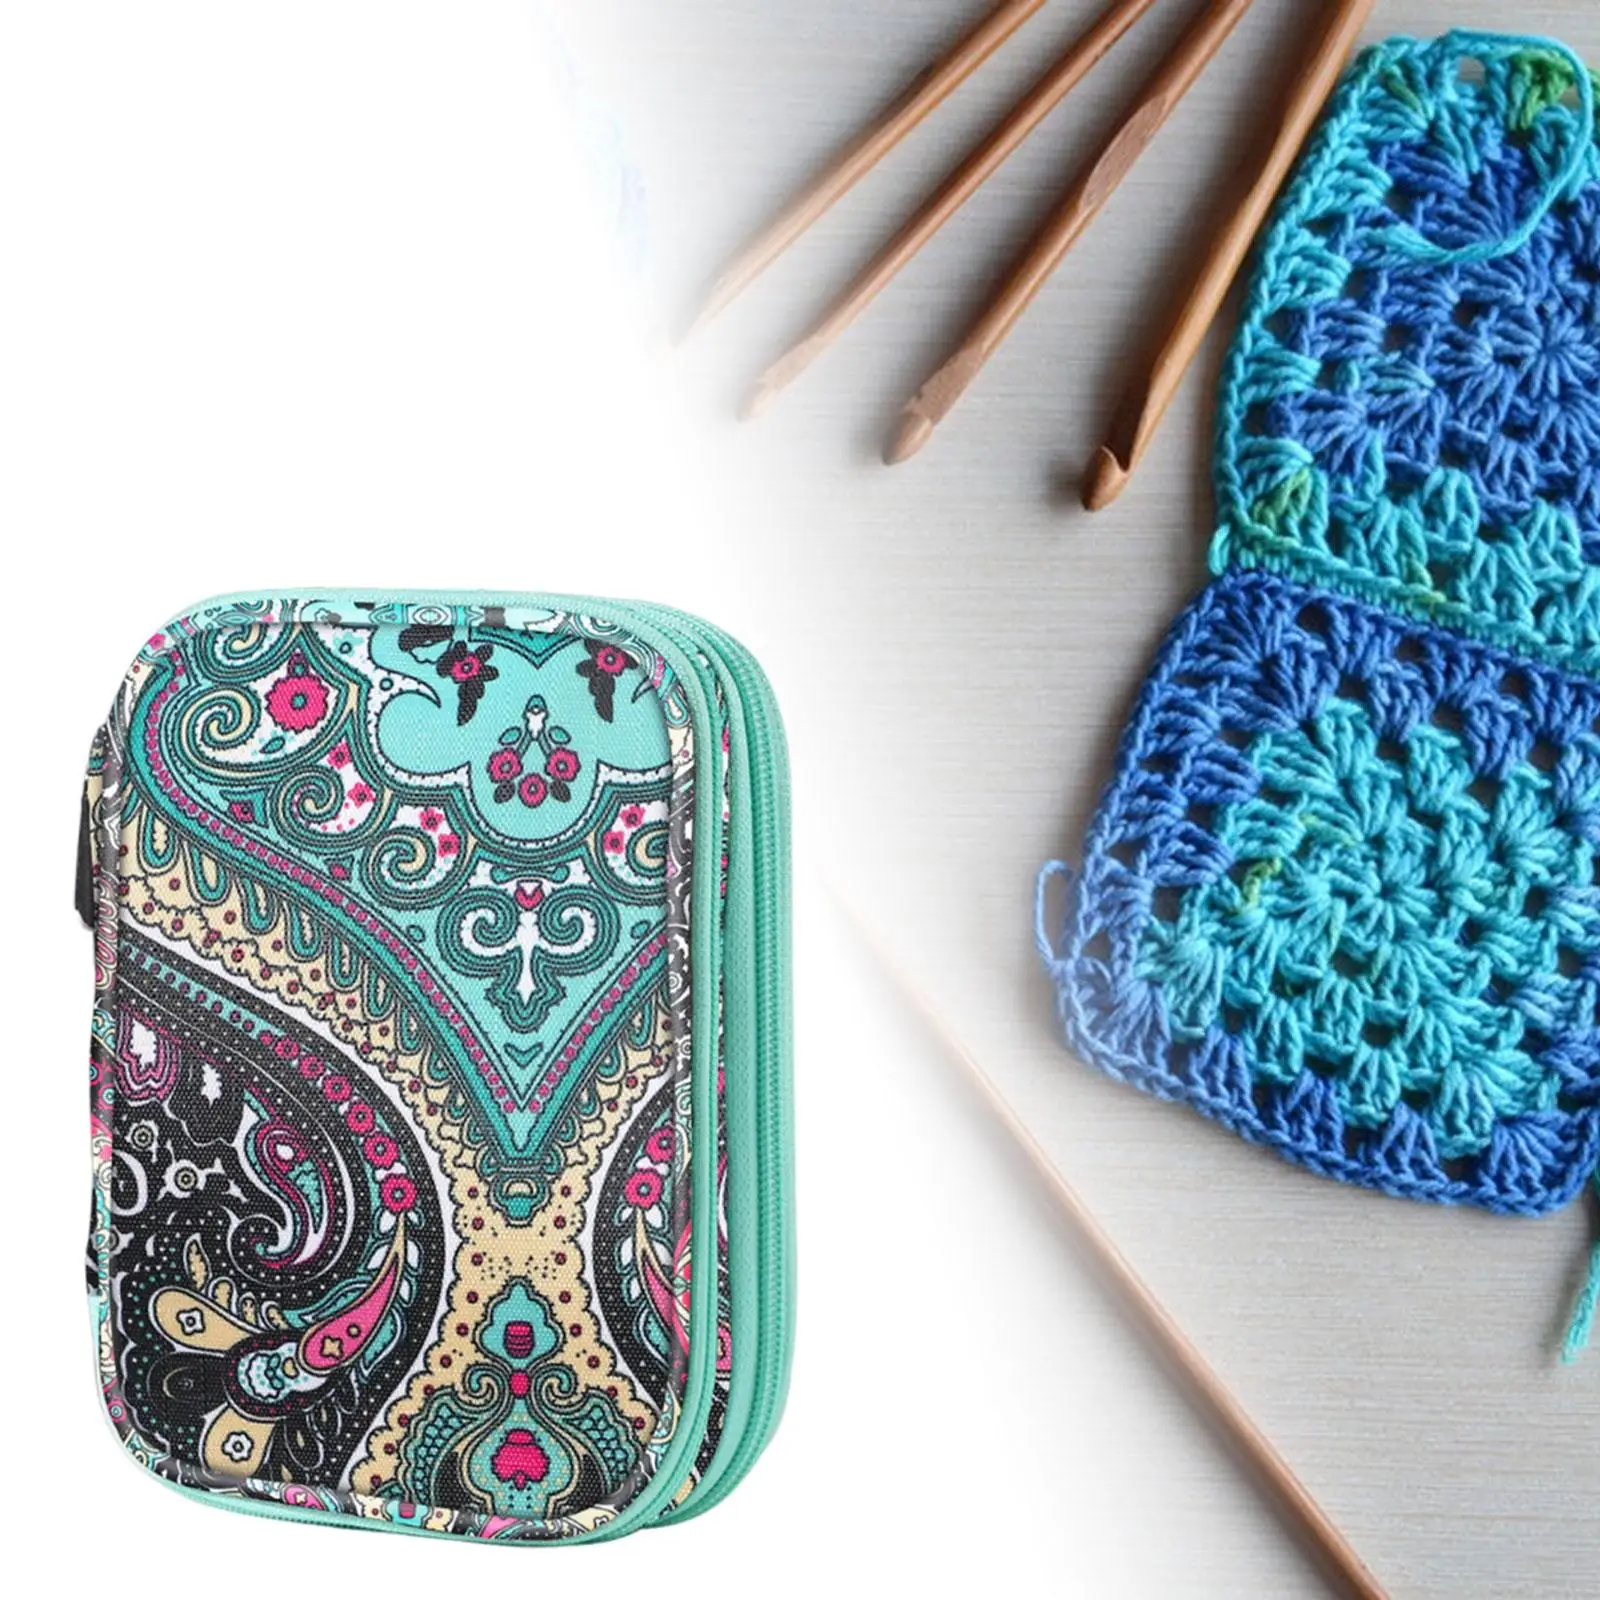 Knitting Needle Storage Bag Crochet Needle Storage Bag Empty Knitting Case